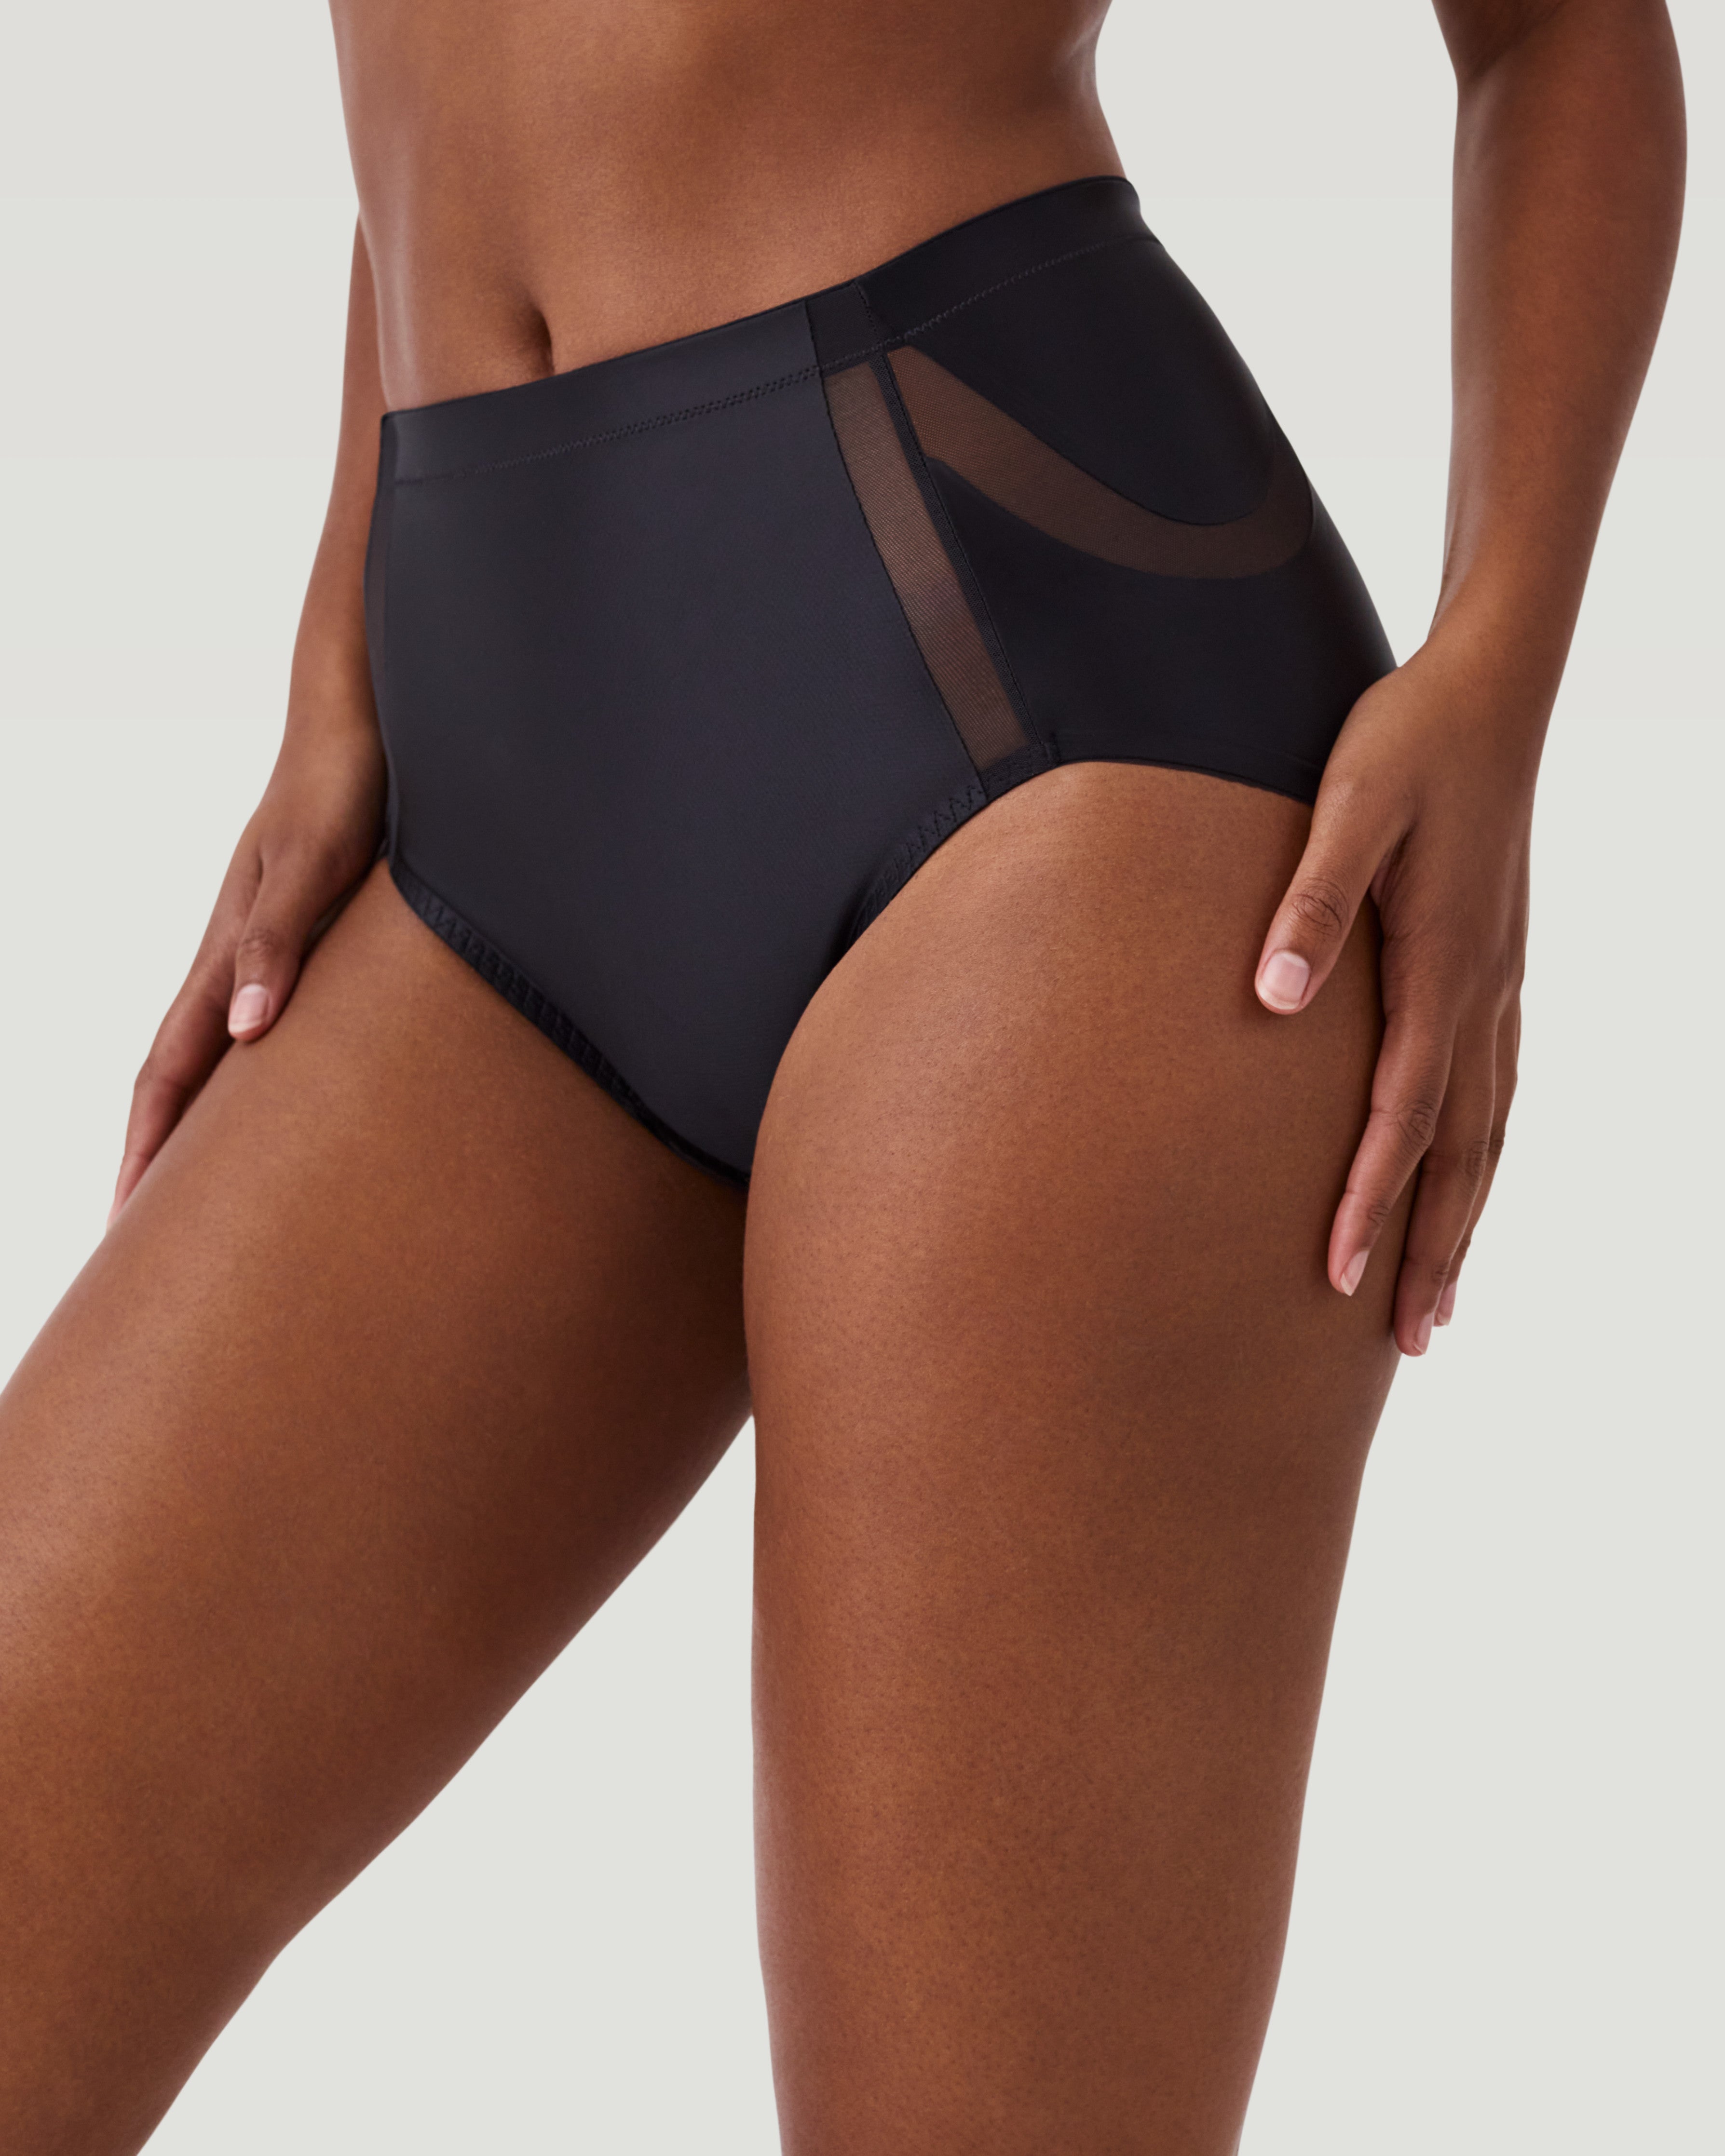 Shapewear Buttock Lift Black Seamless Queen Size Tummy Control! –  Wandsnlipstick Beauty Bar